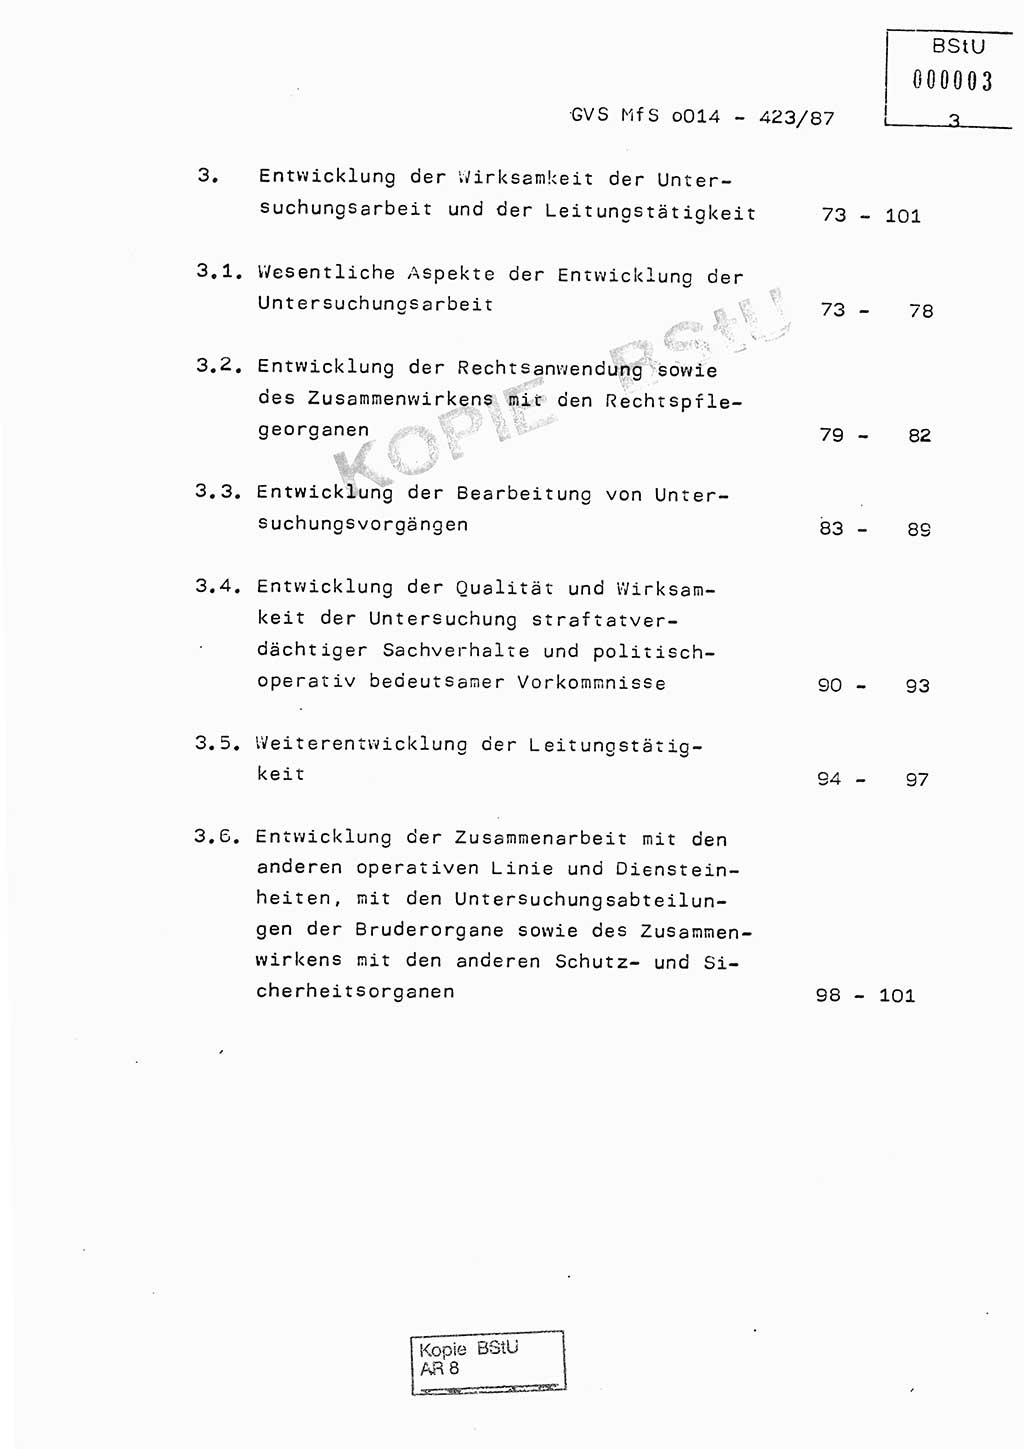 Jahresbericht der Hauptabteilung (HA) Ⅸ 1986, Einschätzung der Wirksamkeit der Untersuchungsarbeit im Jahre 1986, Ministerium für Staatssicherheit (MfS) der Deutschen Demokratischen Republik (DDR), Hauptabteilung Ⅸ, Geheime Verschlußsache (GVS) o014-423/87, Berlin 1987, Seite 3 (Einsch. MfS DDR HA Ⅸ GVS o014-423/87 1986, S. 3)